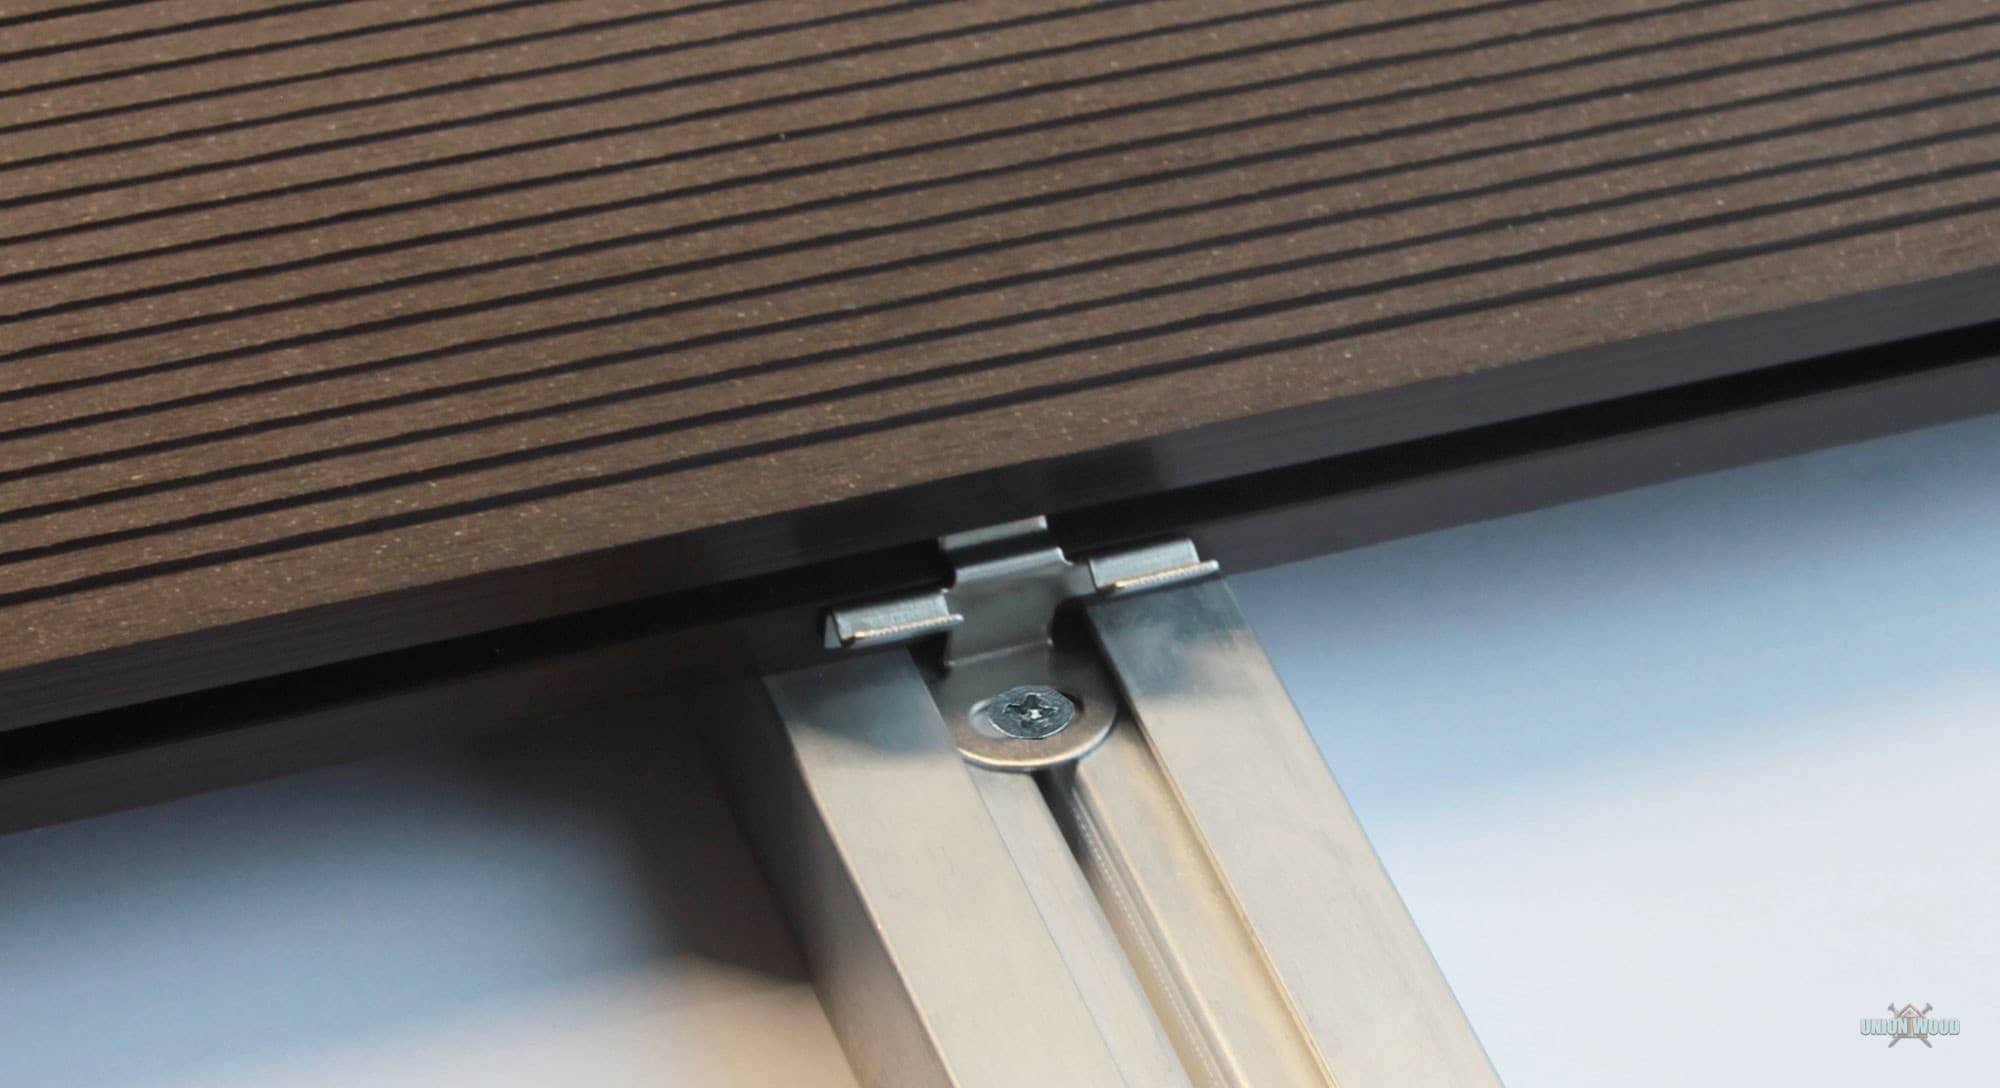 Крепеж промежуточный KRONEX для террасной доски Outdoor 25 мм